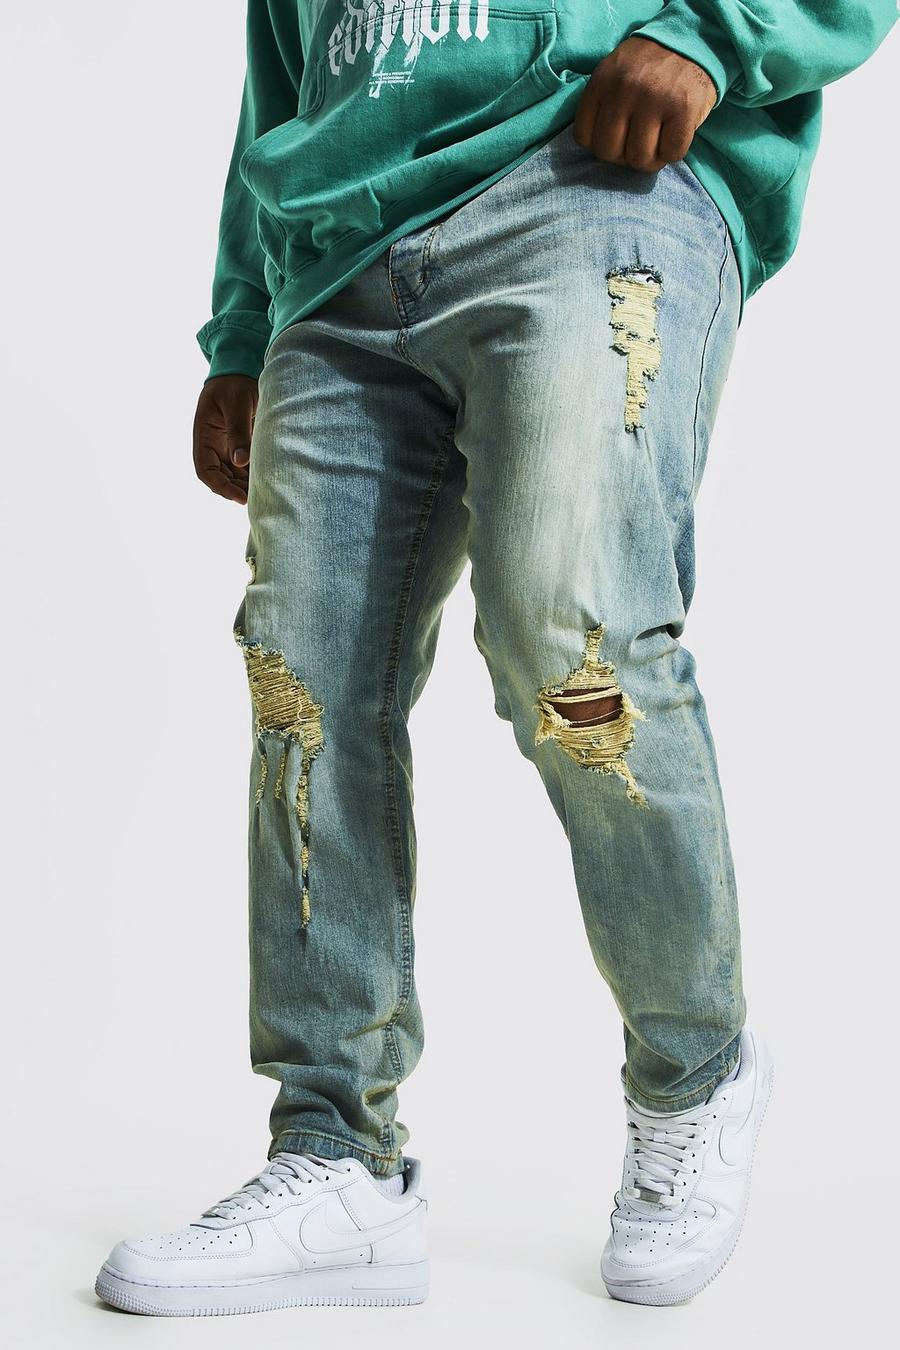 כחול עתיק סקיני ג'ינס עם קרעים ובד משופשף בברכיים, מידות גדולות